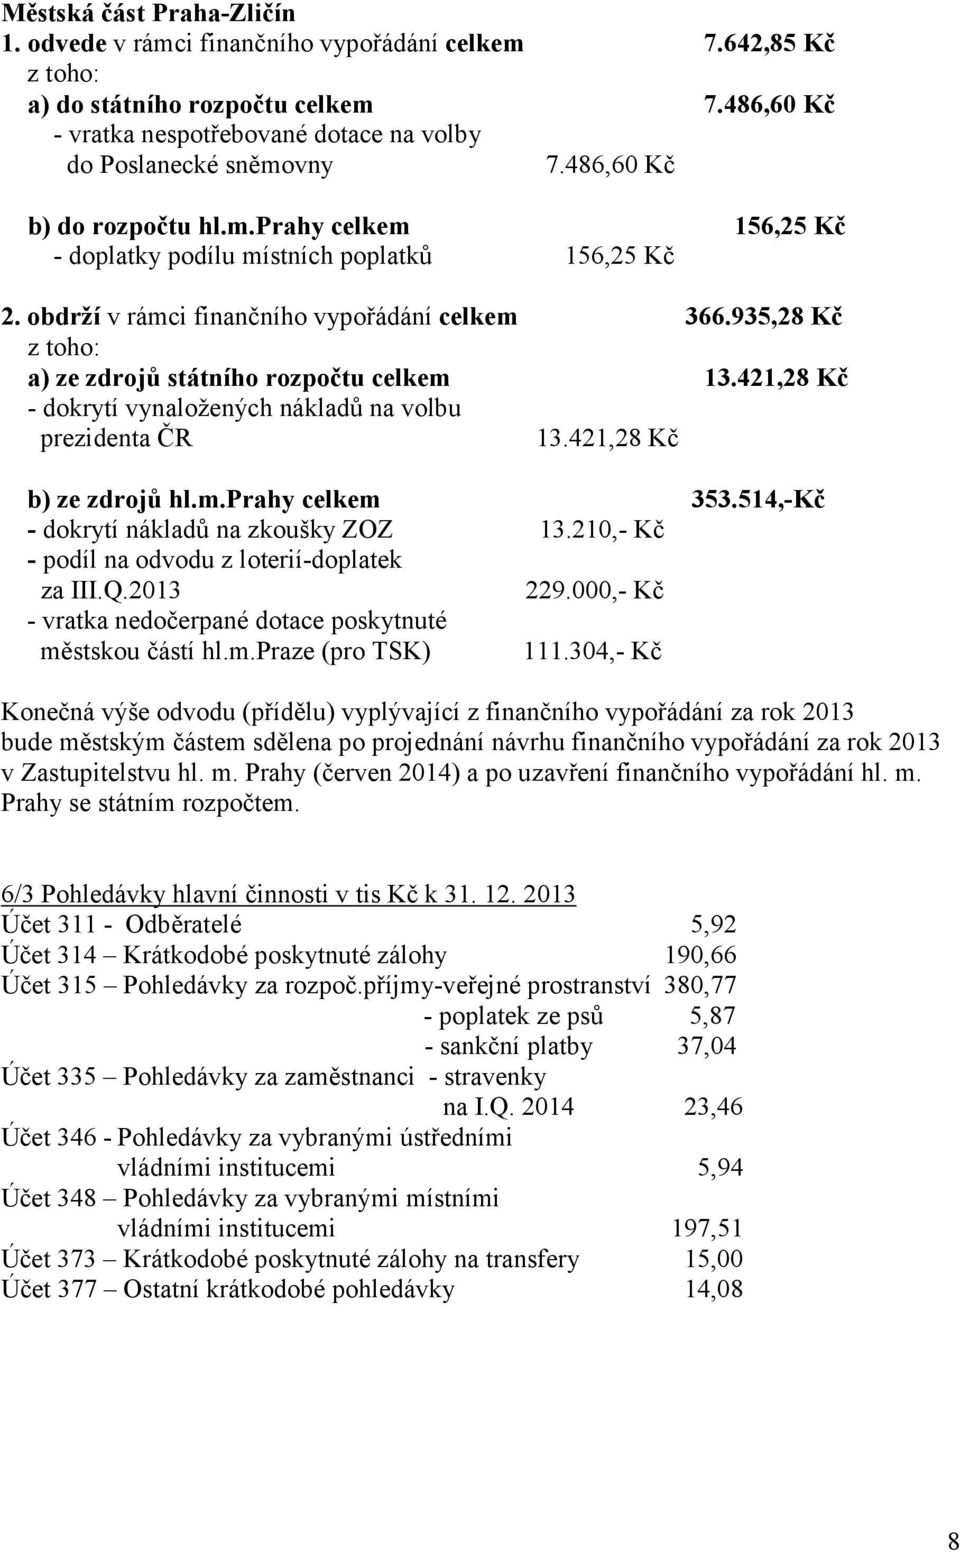 obdrží v rámci finančního vypořádání celkem 366.935,28 Kč z toho: a) ze zdrojů státního rozpočtu celkem 13.421,28 Kč - dokrytí vynaložených nákladů na volbu prezidenta ČR 13.421,28 Kč b) ze zdrojů hl.